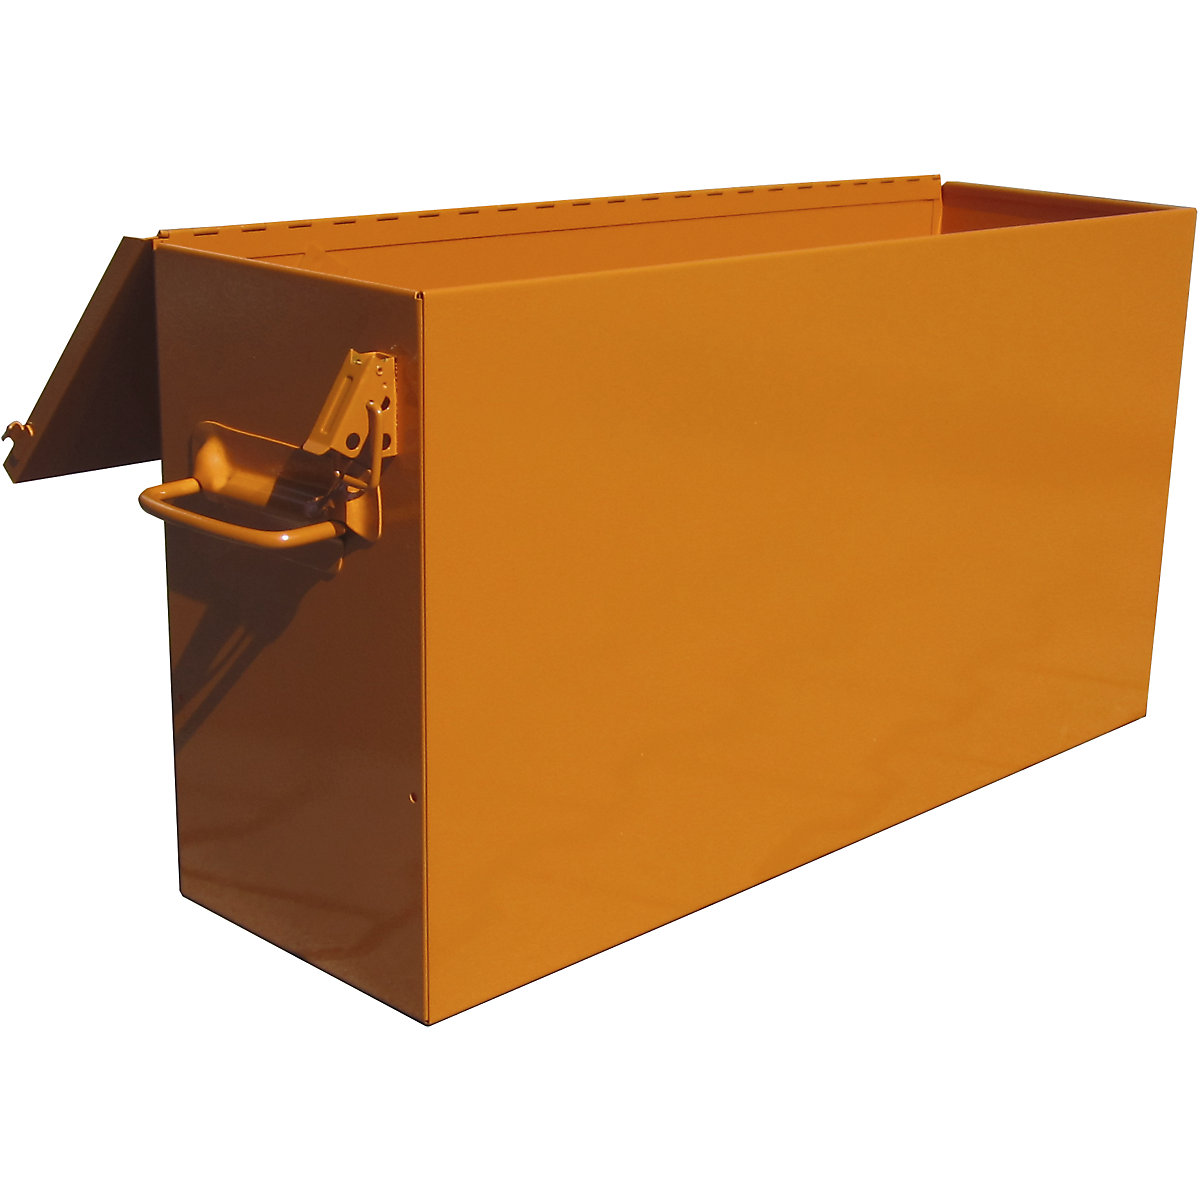 Kutija za vučnu dizalicu, u narančastoj boji, za vučnu dizalicu nosivosti 3200 kg